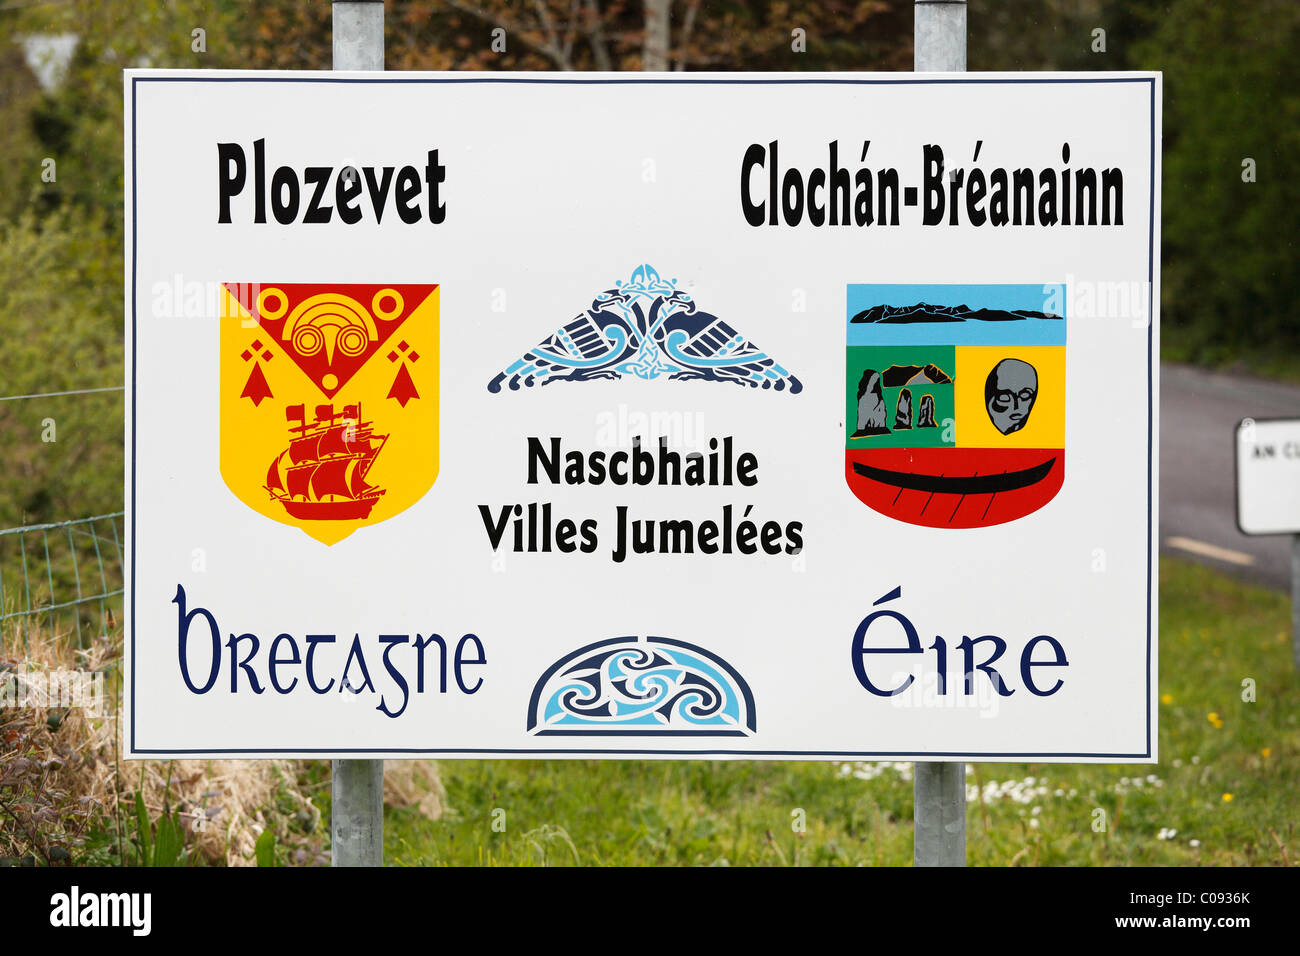 Identifícate irlandeses y franceses de twin cities Brandon-Cloghan Plozevet en Bretaña y en Irlanda, la península Dingle, , Irlanda Foto de stock